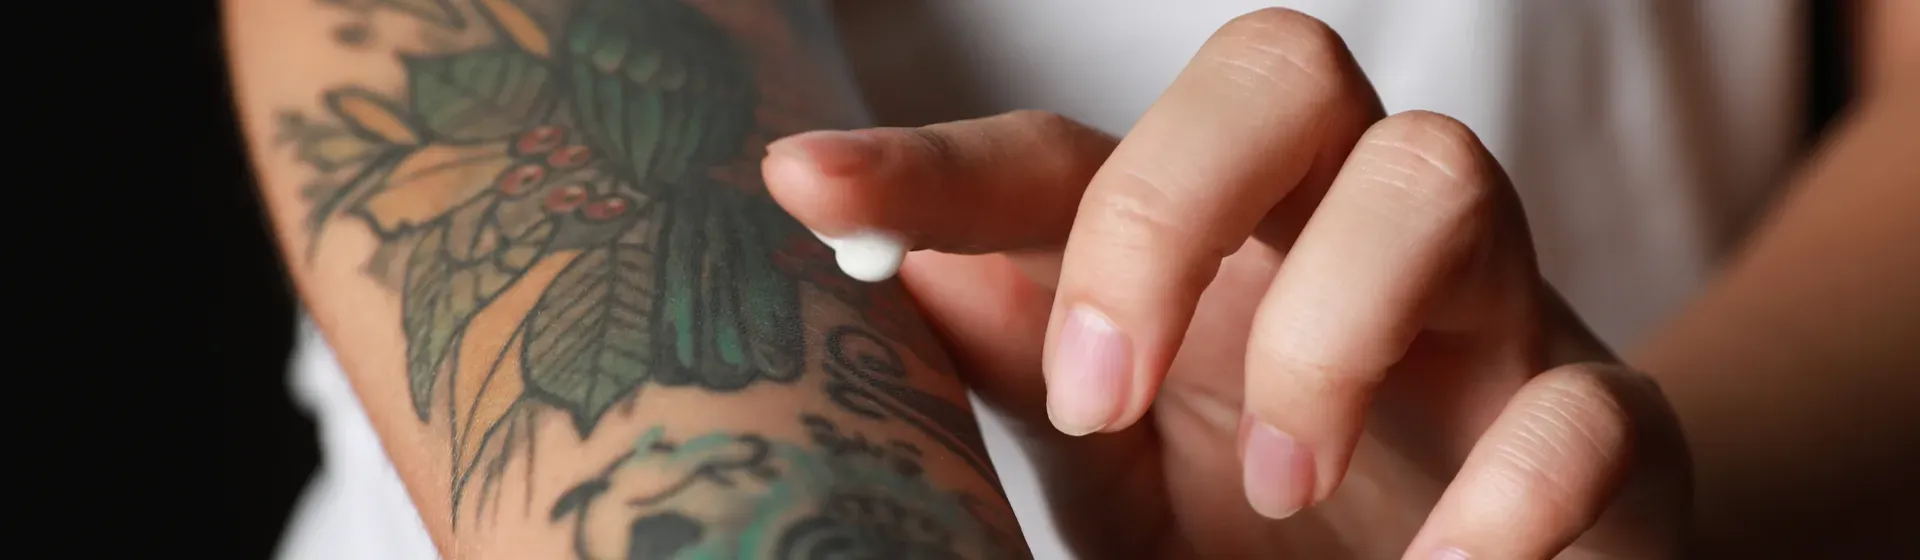 Tatuagem na mão: Melhores ideias pra tattoo na mão em 2022!